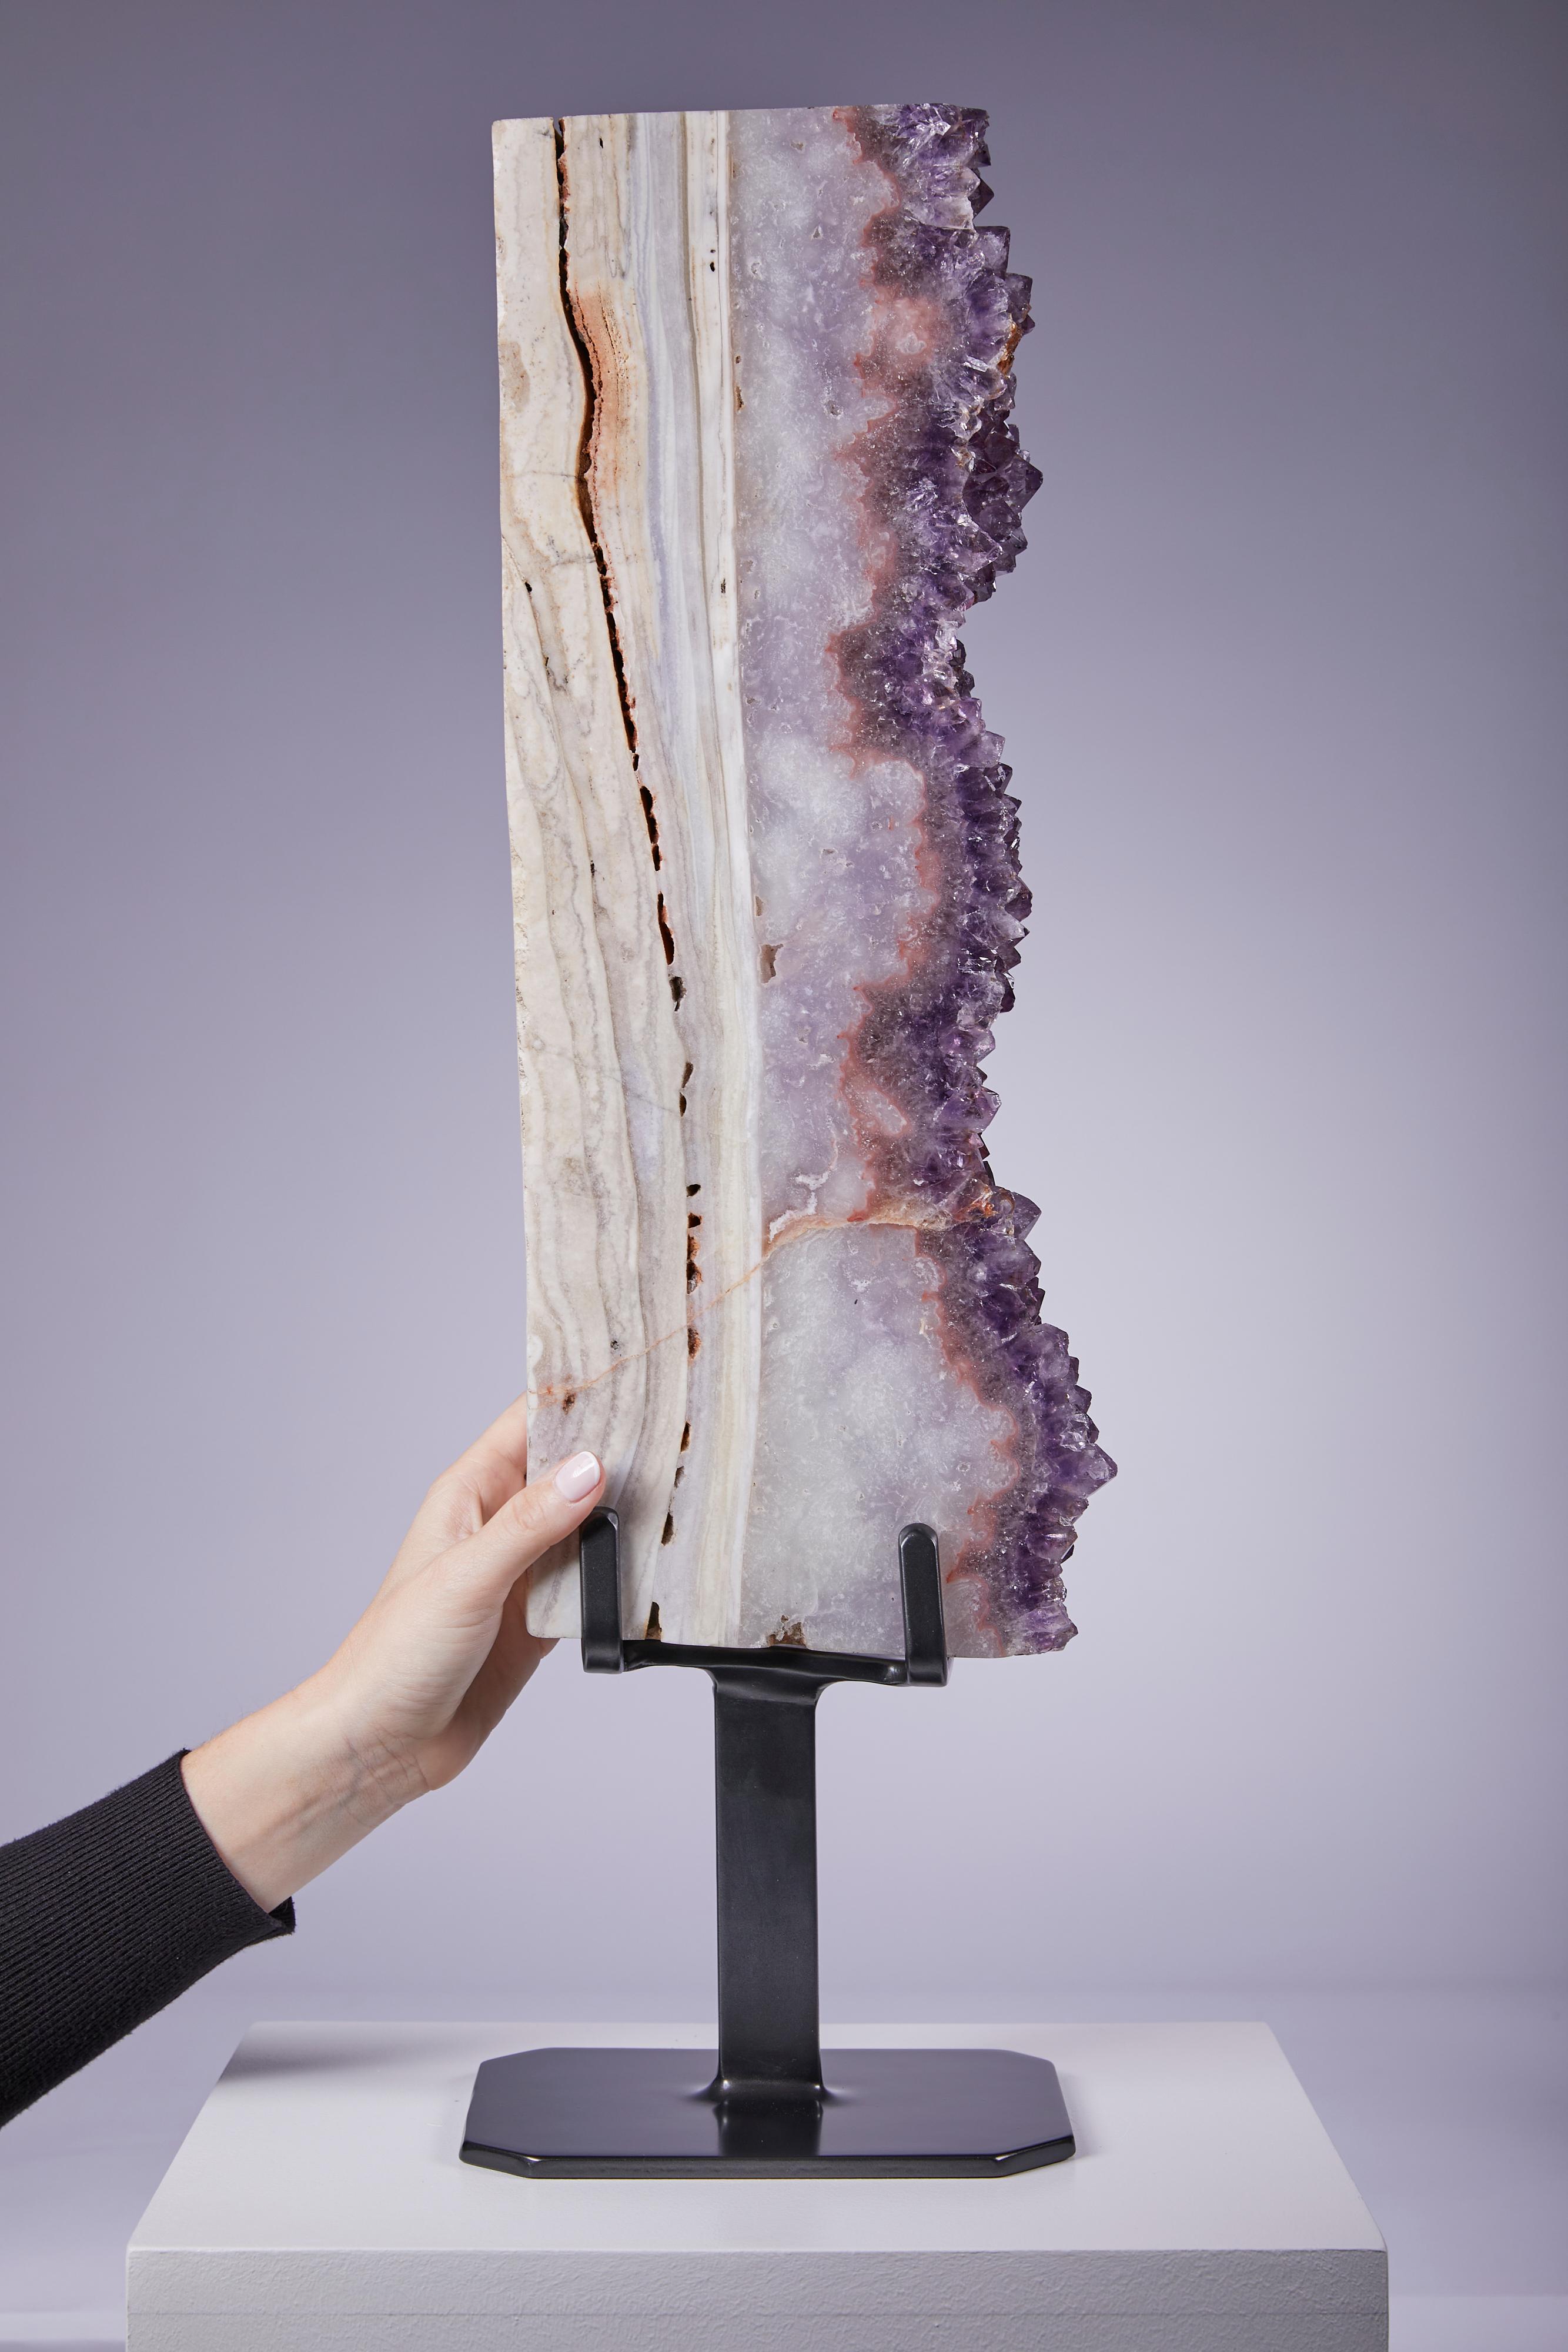 Grande présentation verticale montrant une améthyste violette vibrante bordée d'une épaisse couche d'agate.  Il fait partie d'un groupe de quatre spécimens impressionnants.  De telles pièces sont difficiles à trouver en raison de la taille et de la